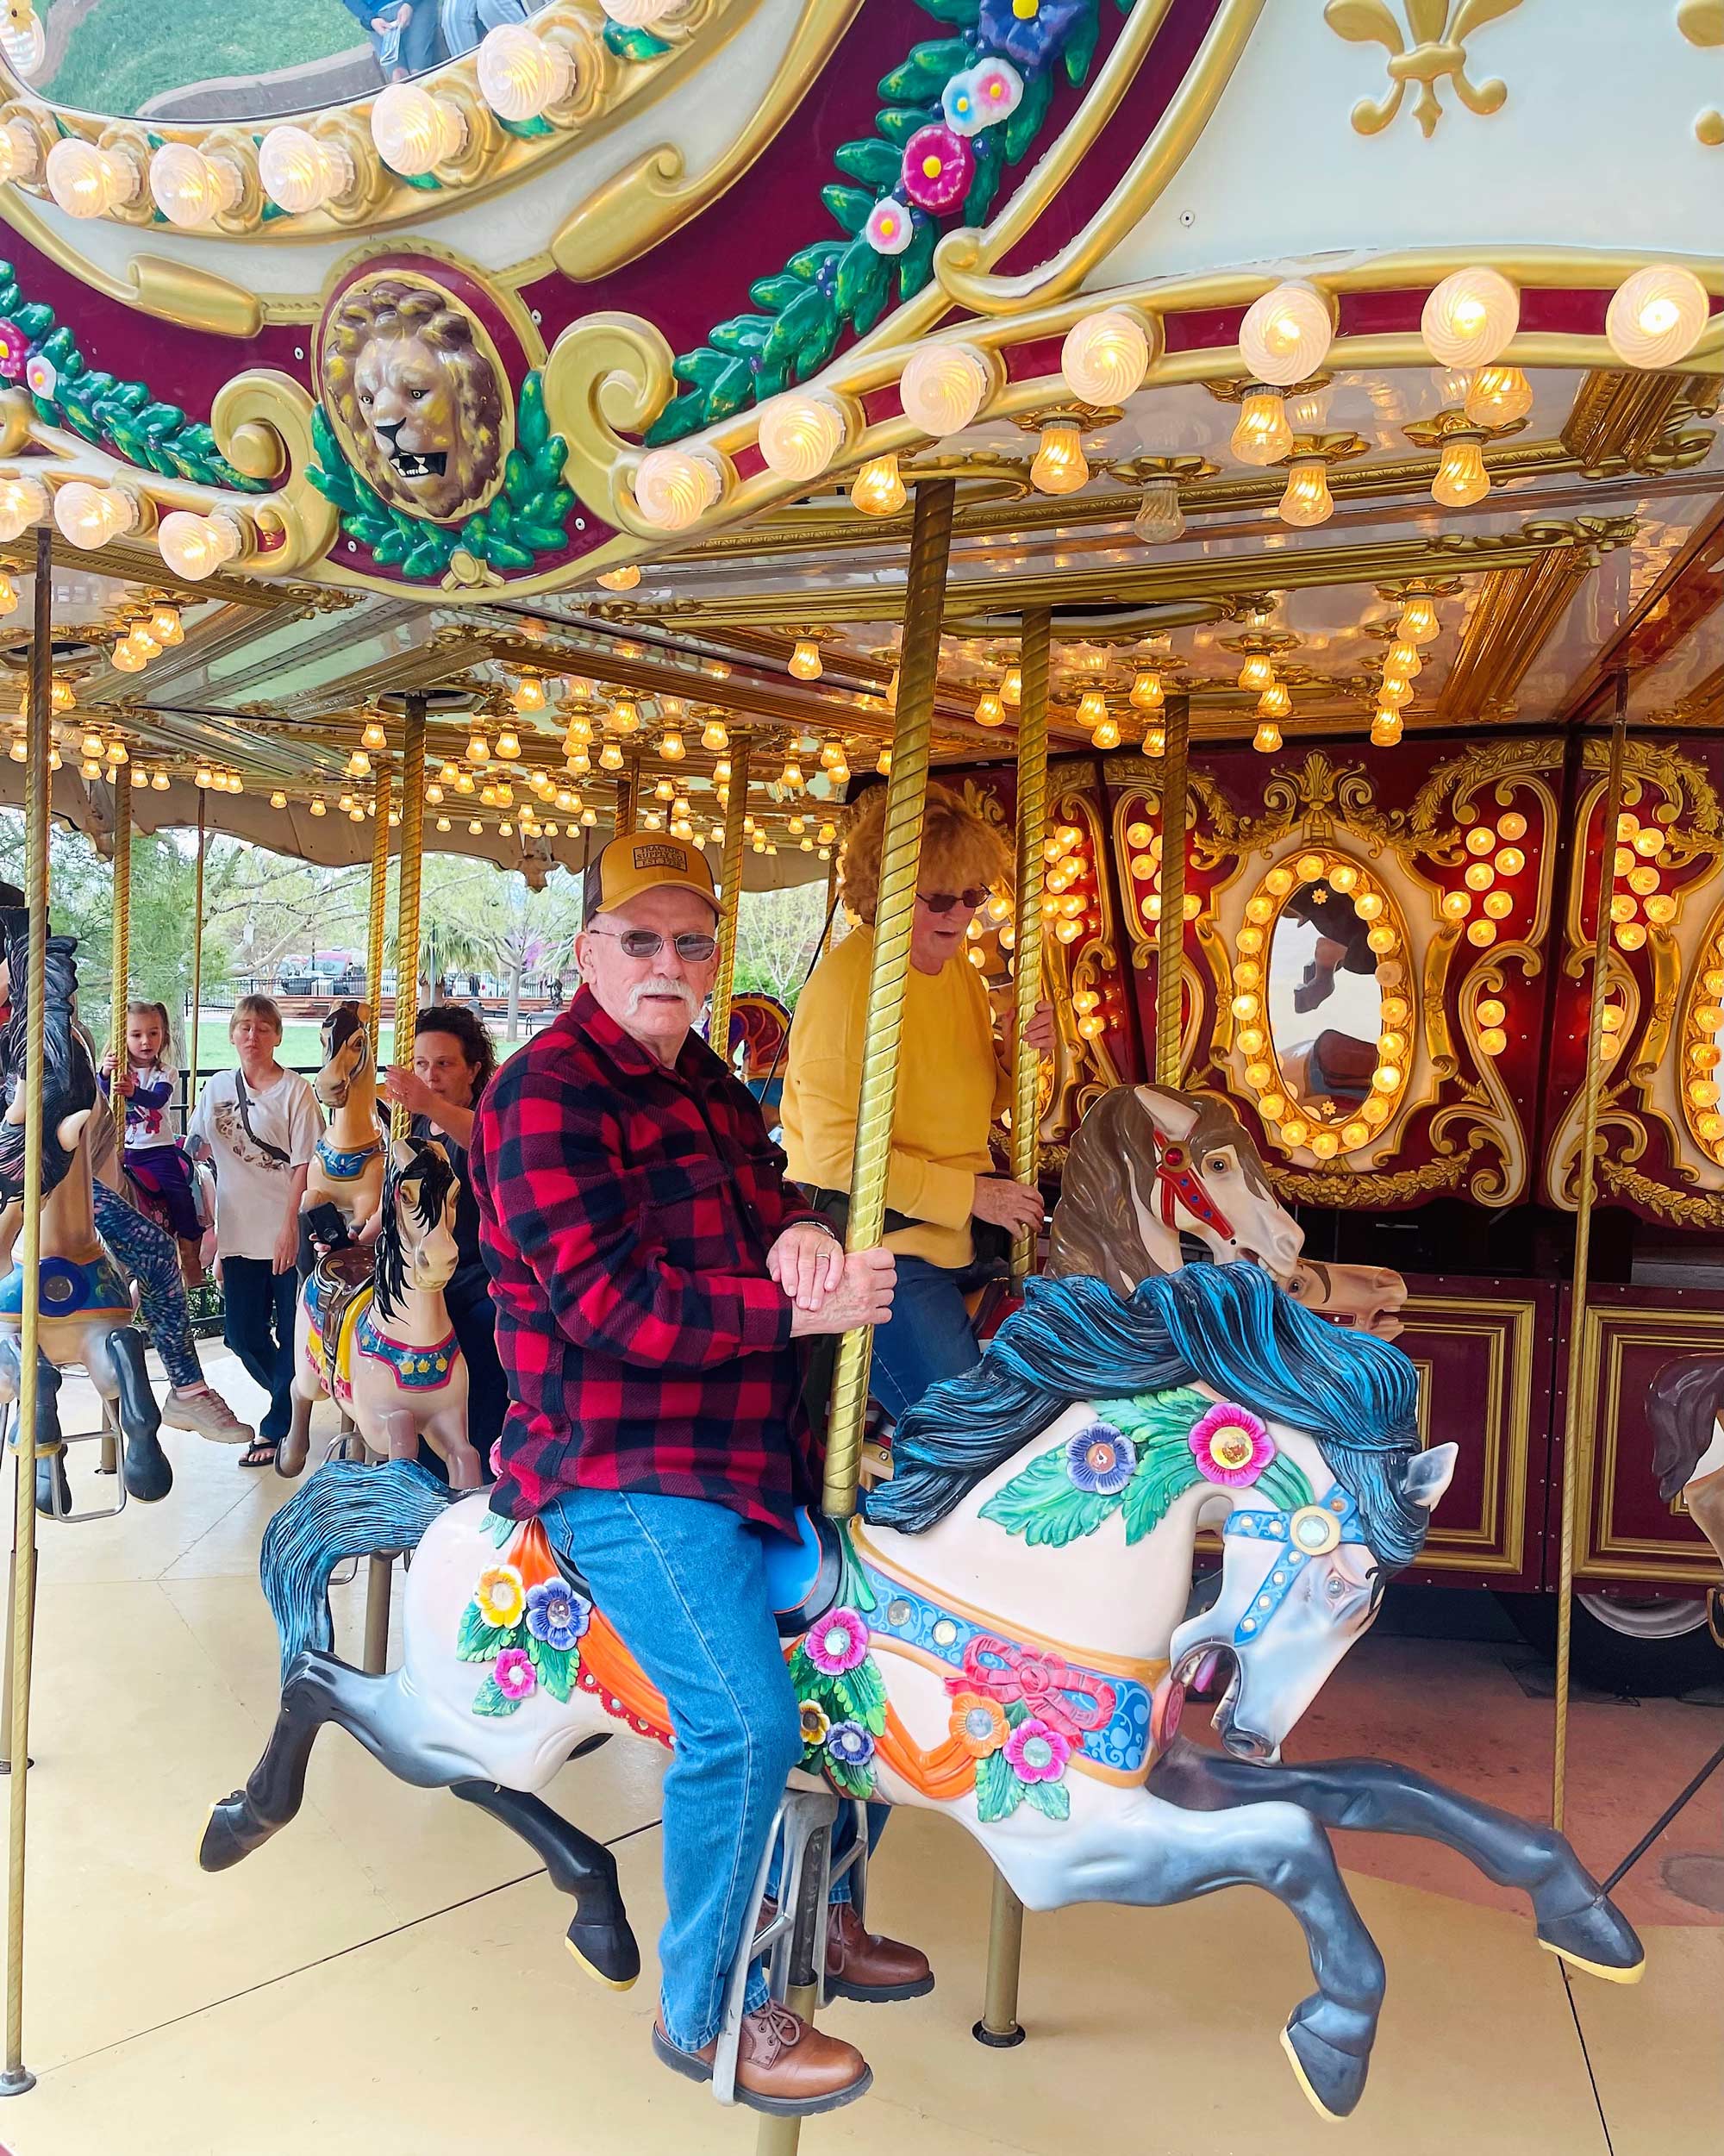 Old man riding Carousel